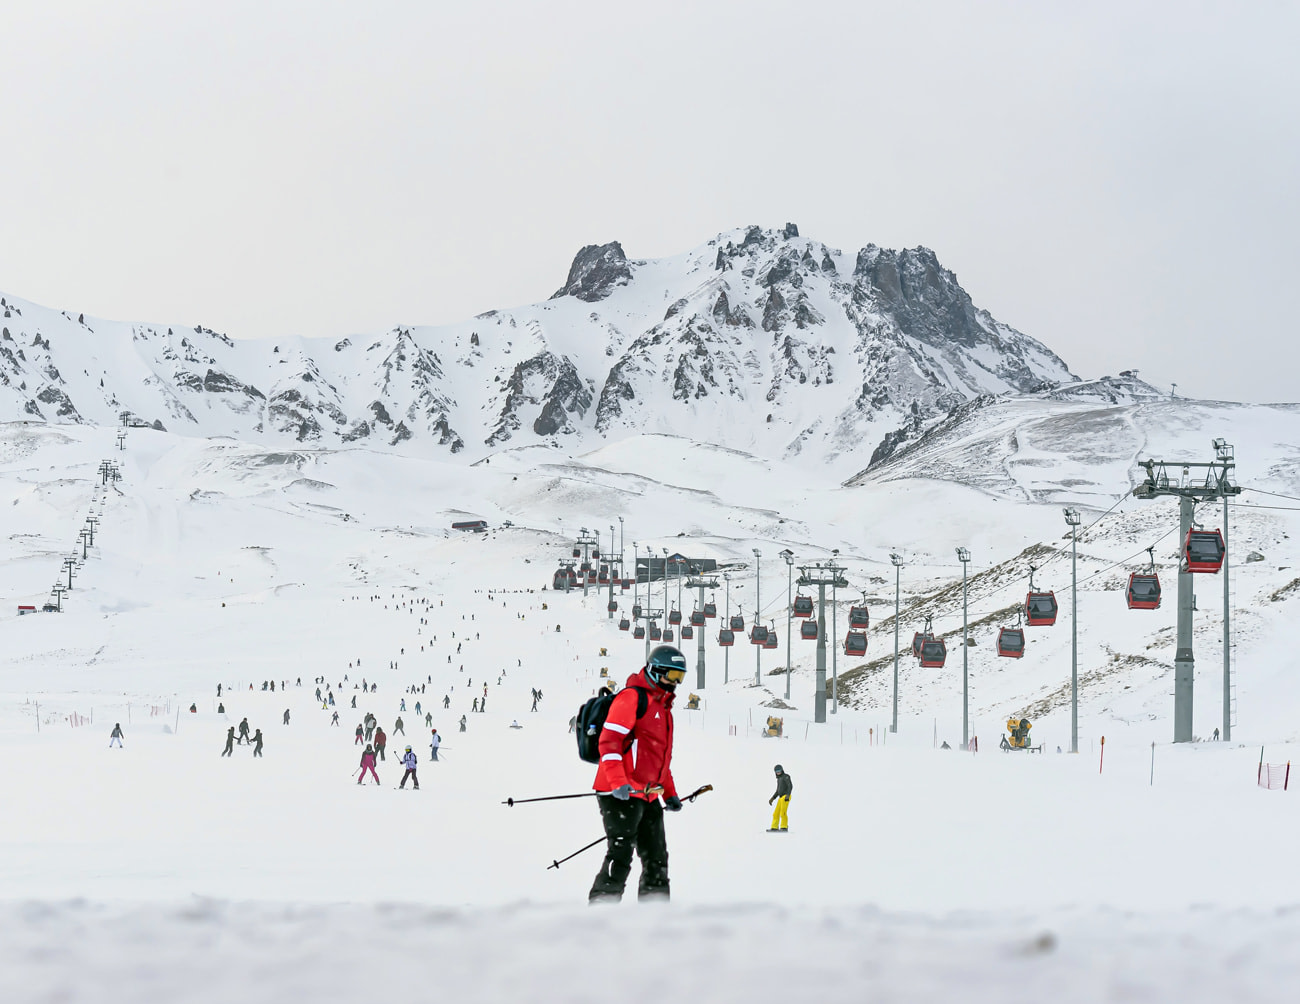 Ercİyes Ski Resort